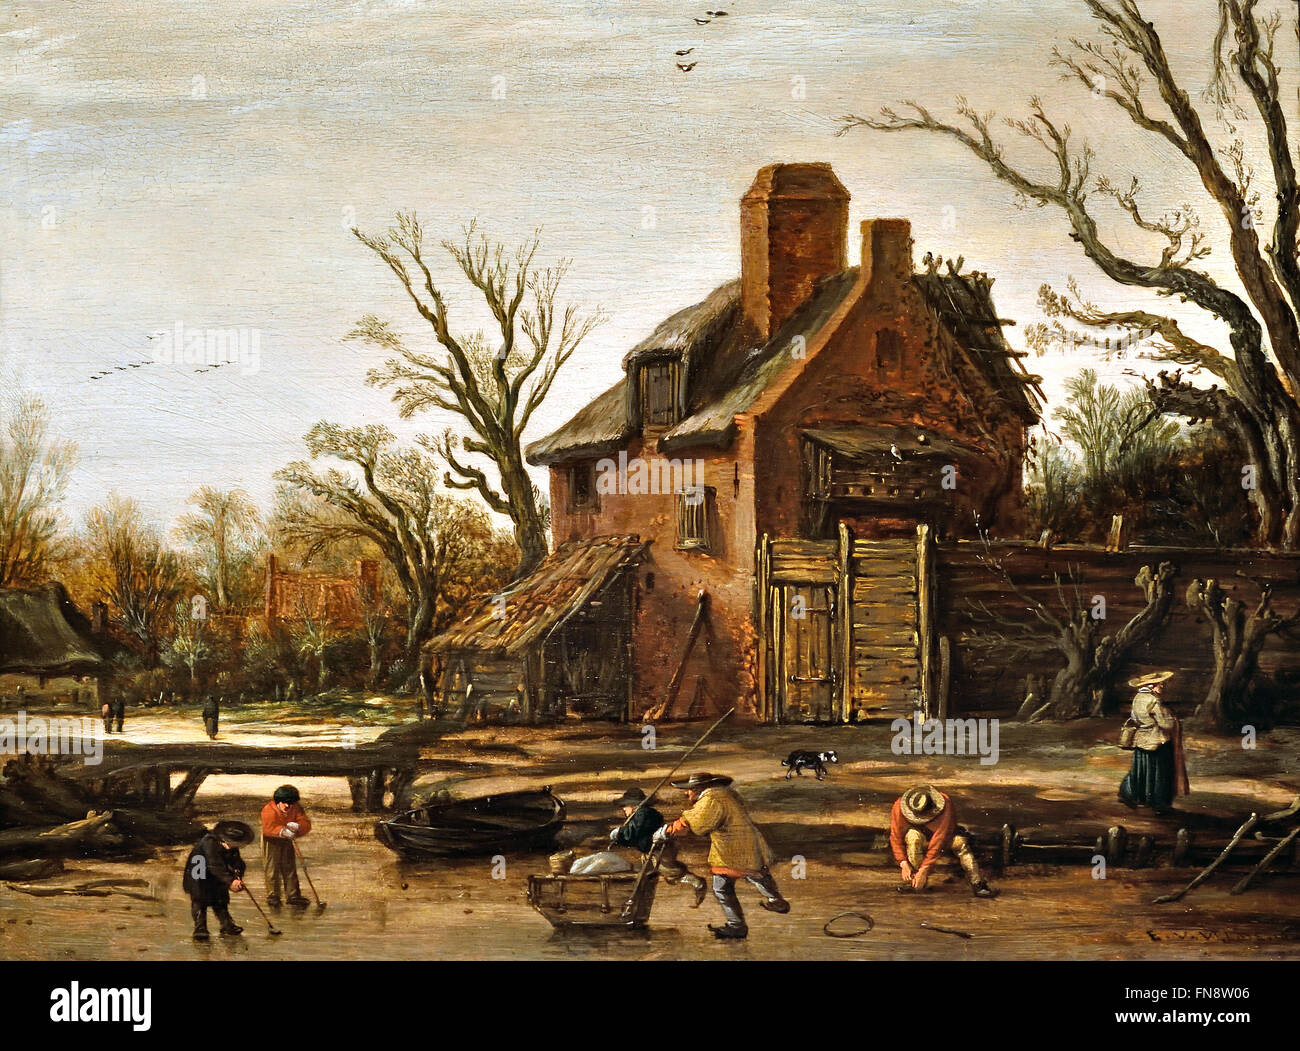 Esaias van de Velde, winterliche Landschaft mit Bauernhaus, 1624 holländischen Niederlanden ein Mann ist auf seine Skates binden und anderen drängt auf einen Schlitten, während zwei jungen "Kolf" – ähnlich wie bei heutigen Eishockey spielen sind) Stockfoto